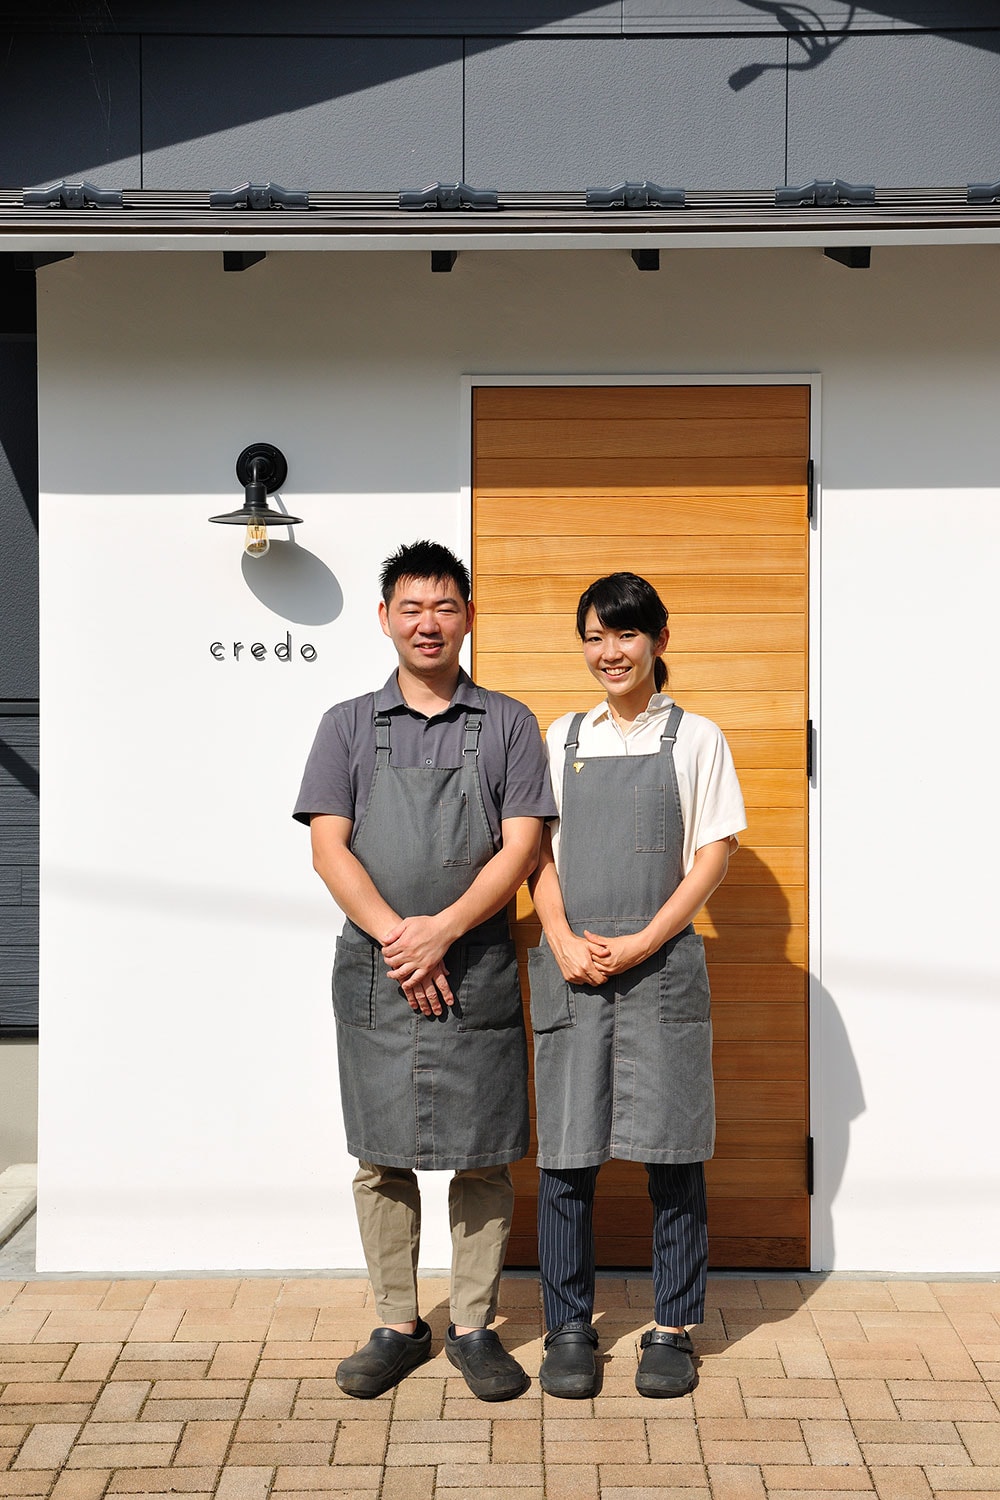 鈴木俊矢さん、円さん夫妻。いつかは山の中に畑付きのレストランを作るのがふたりの夢だという。